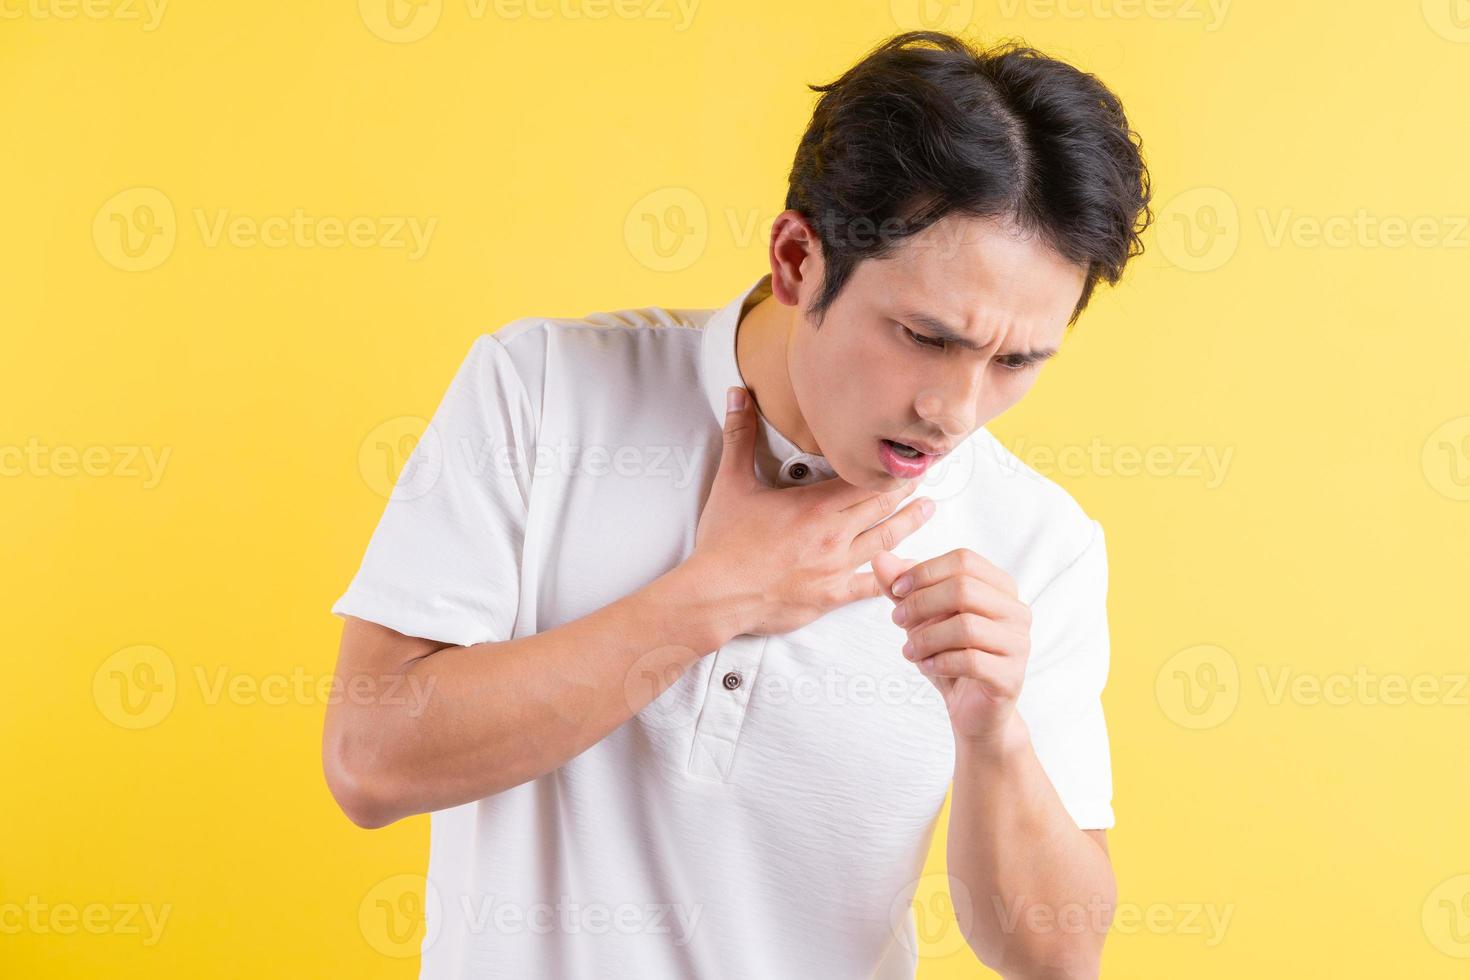 ett porträtt av en ung man som håller halsen i smärta foto